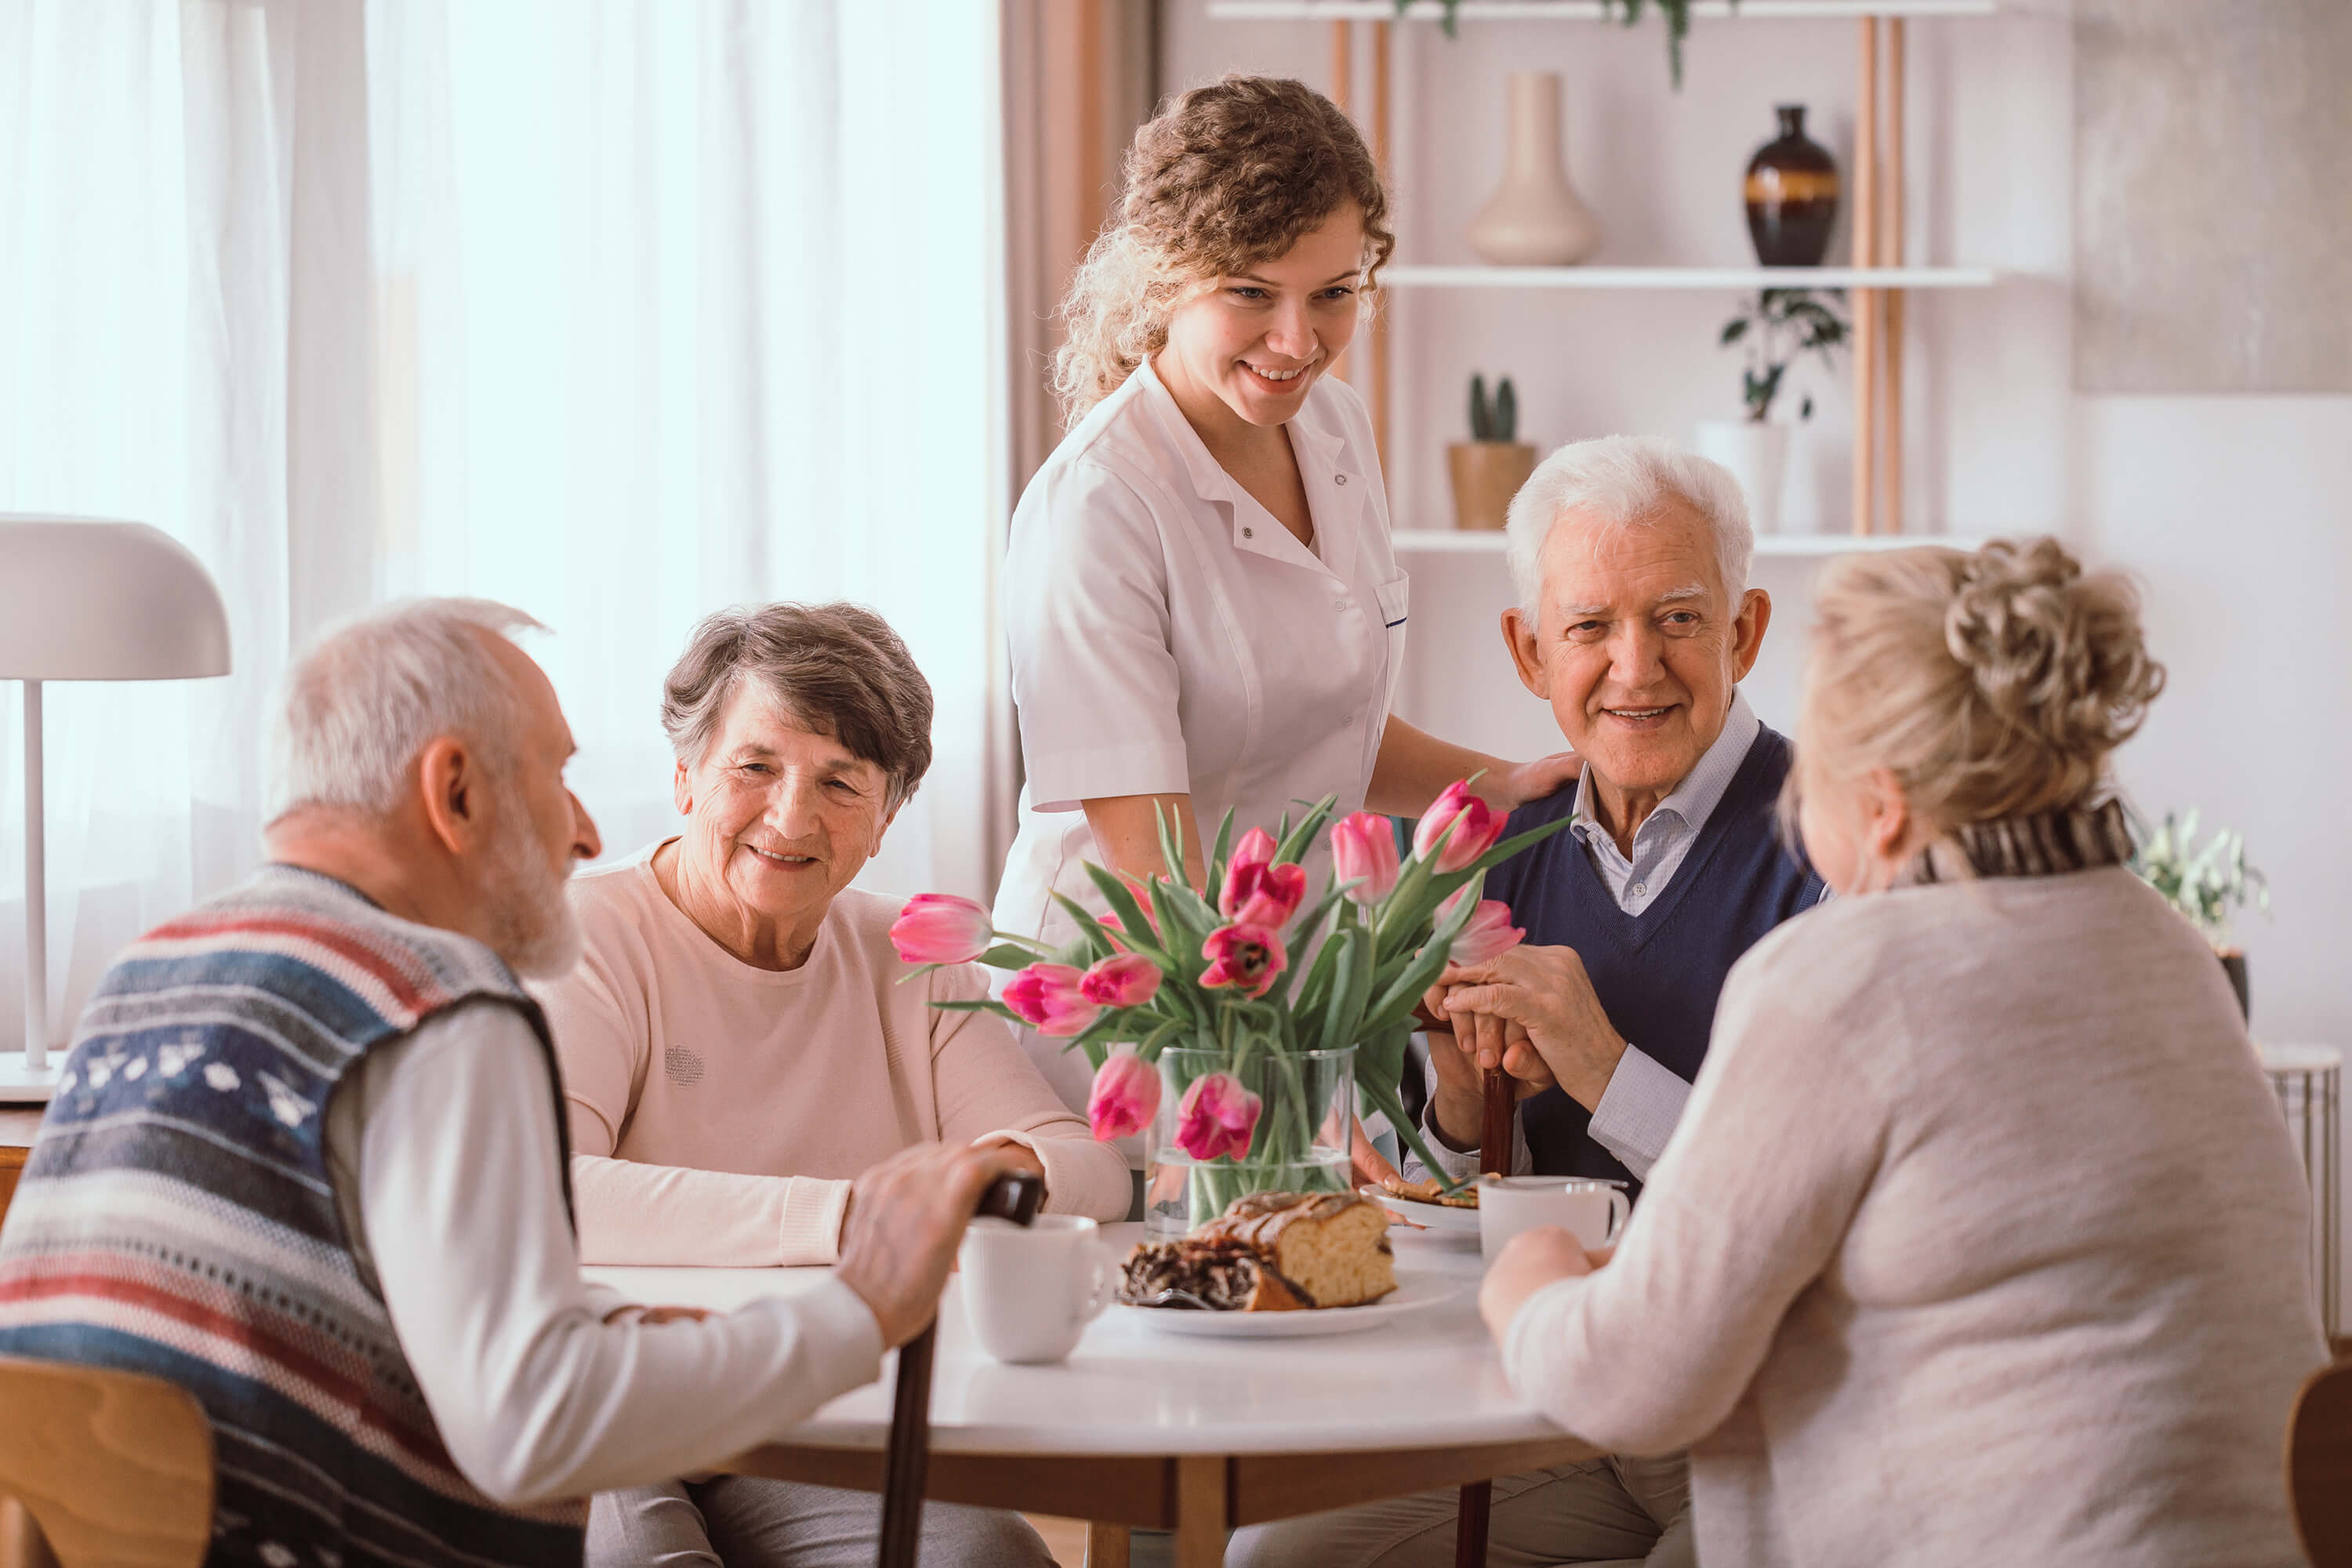 La necessitat de transformar les residències geriàtriques: Com es pot millorar la qualitat de vida de la gent gran?